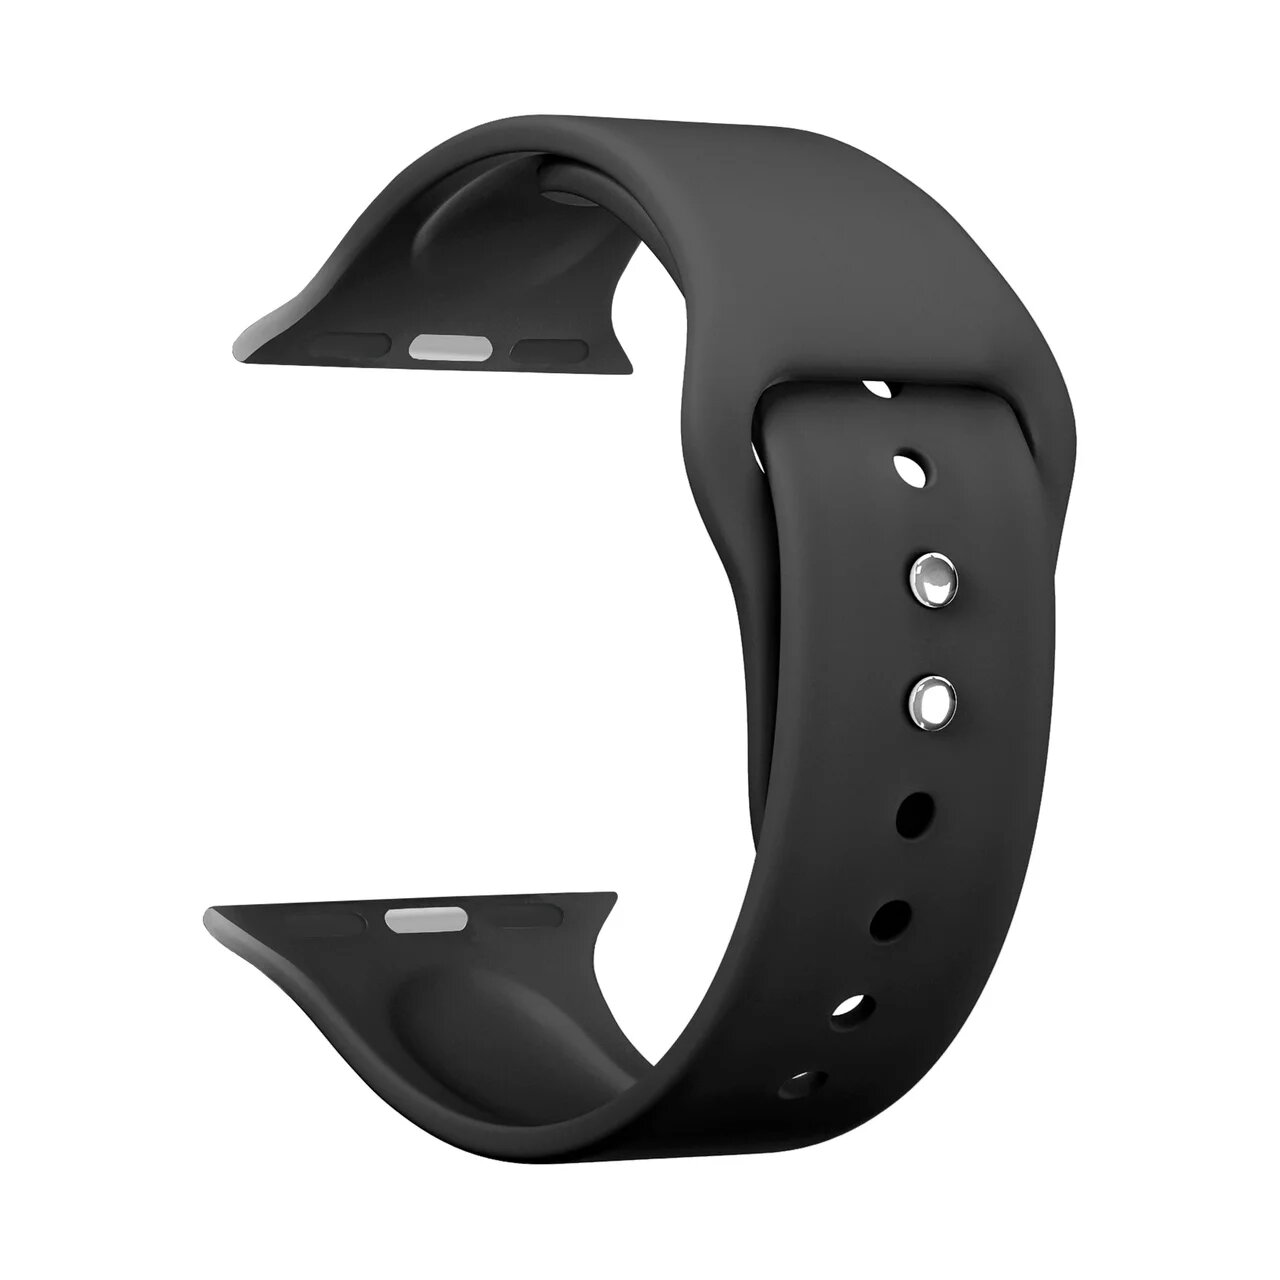 Ремешок для смарт-часов Apple Watch 38/40 mm LYAMBDA ALTAIR, силикон, черный